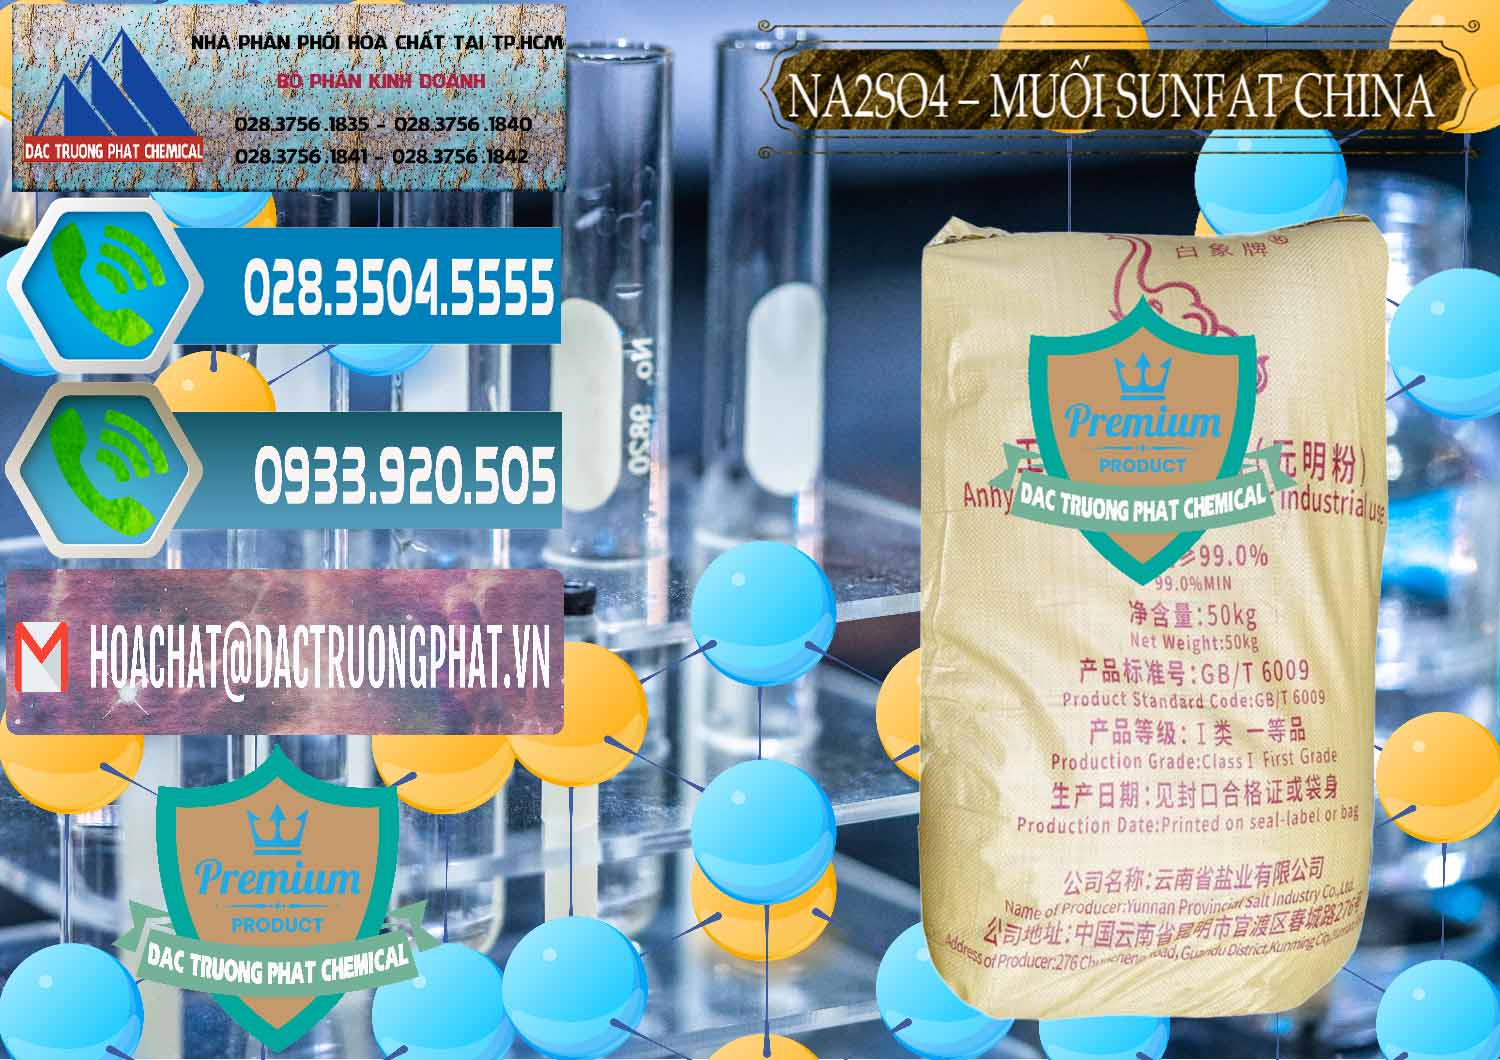 Chuyên phân phối & bán Sodium Sulphate - Muối Sunfat Na2SO4 Logo Con Voi Trung Quốc China - 0409 - Cty phân phối và cung cấp hóa chất tại TP.HCM - congtyhoachat.net